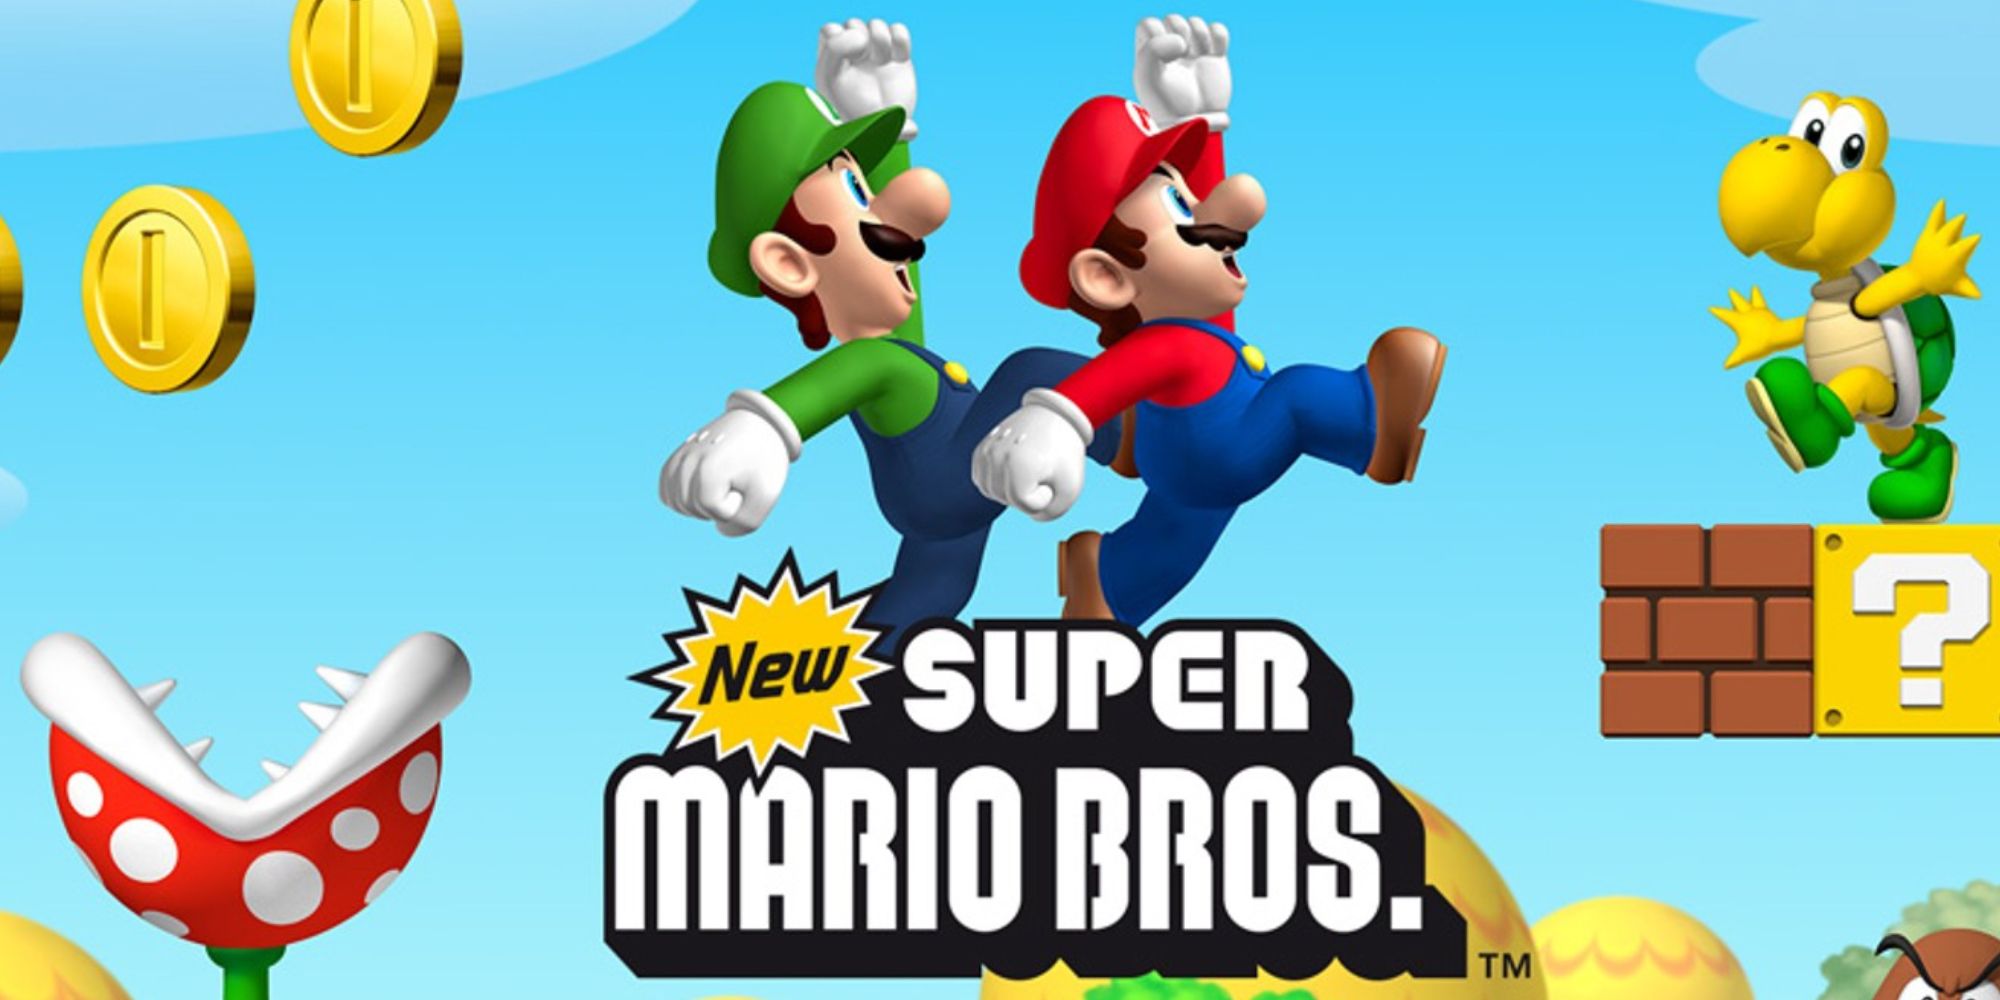 New Super Mario Bros (2006) mario and luigi jumping over the logo